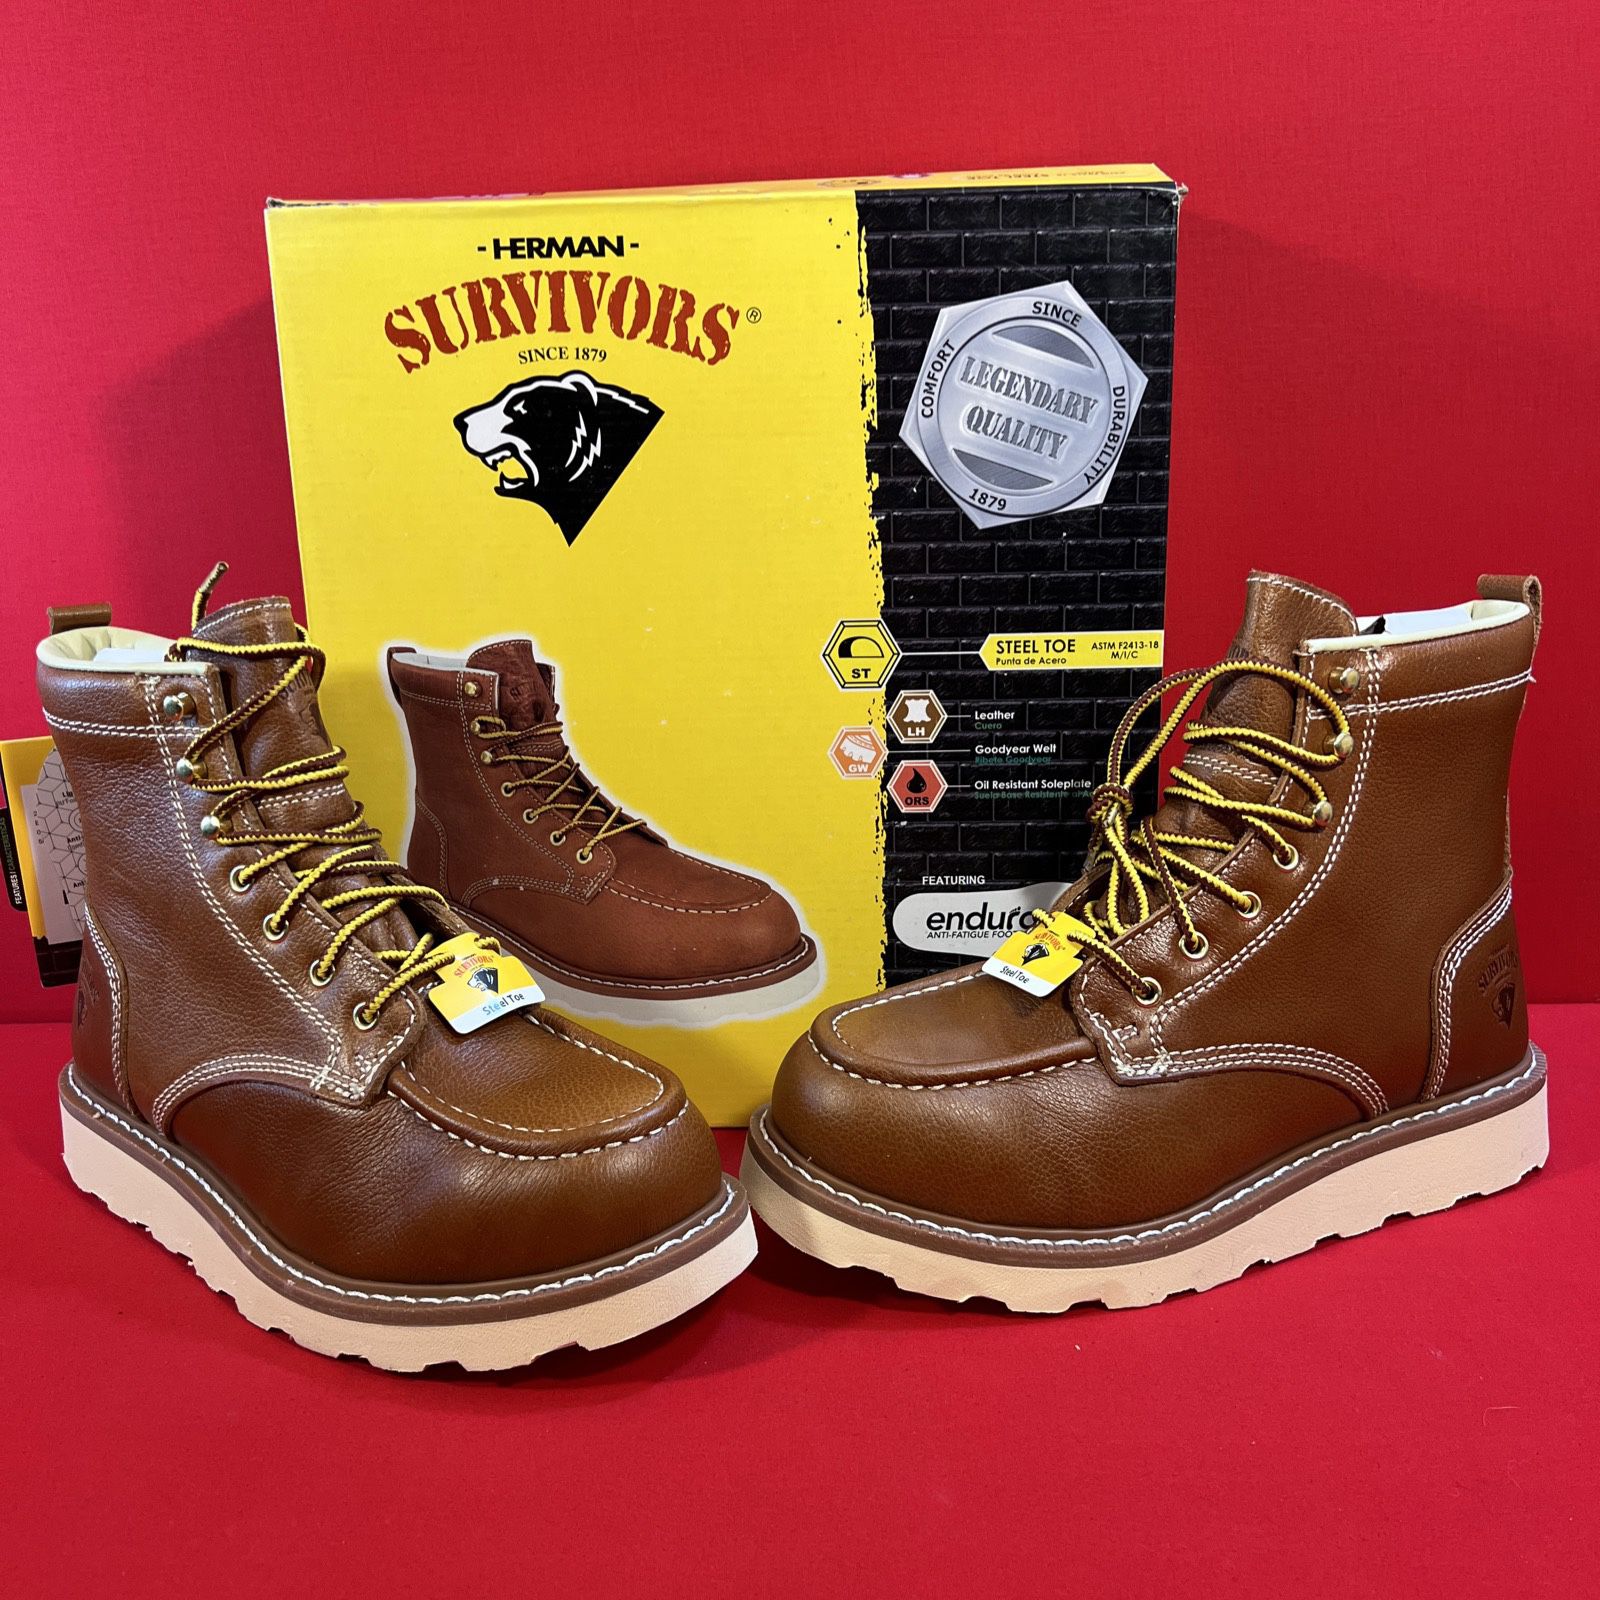 Herman Survivors Men's Oakridge 6" Steel Toe Work Boots, Size 10 - New In Box